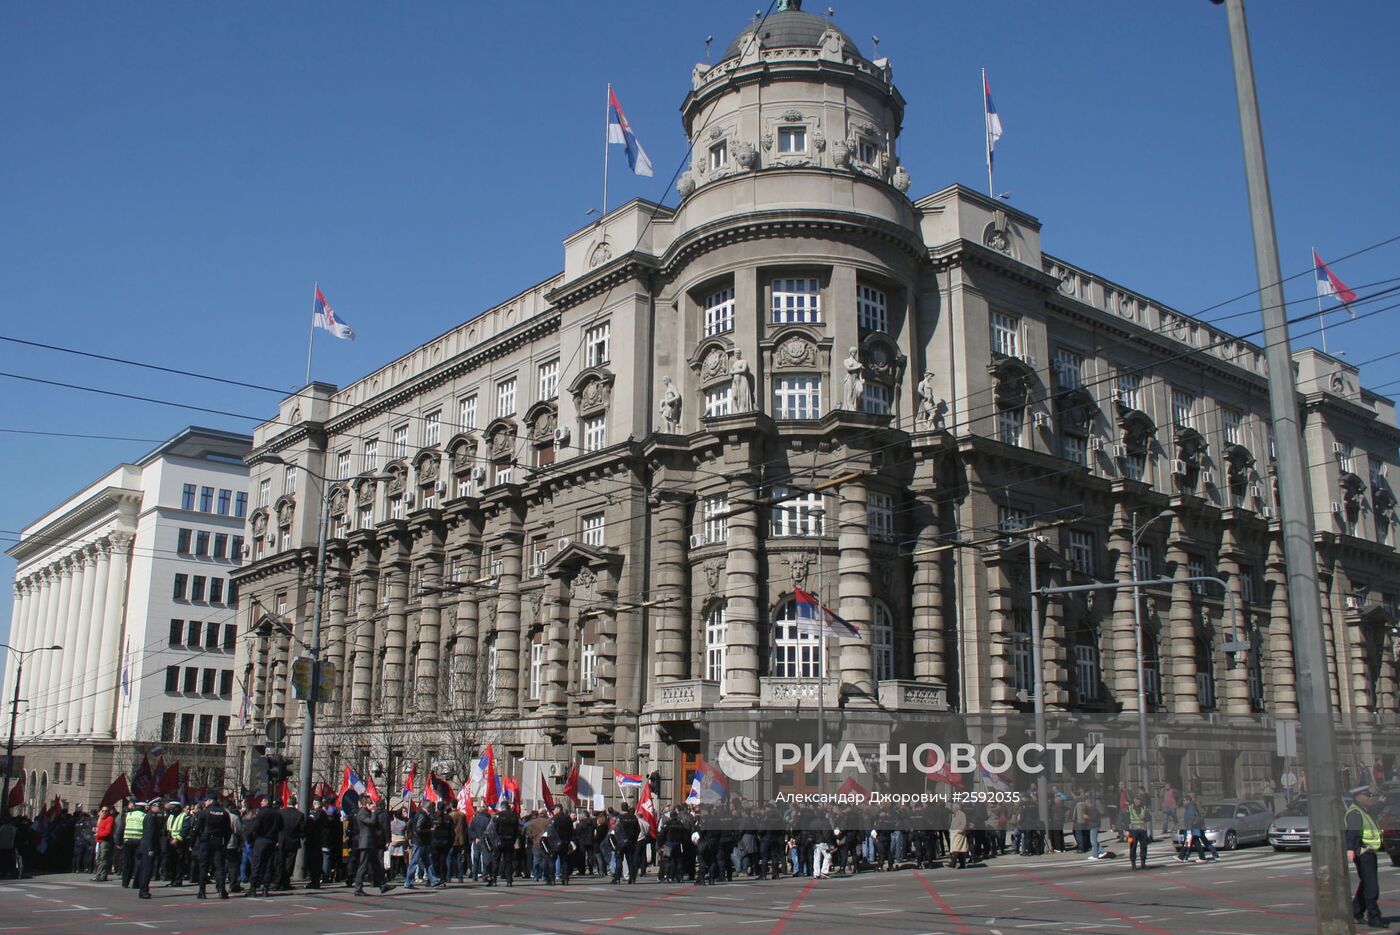 Антиправительственные протесты в Белграде